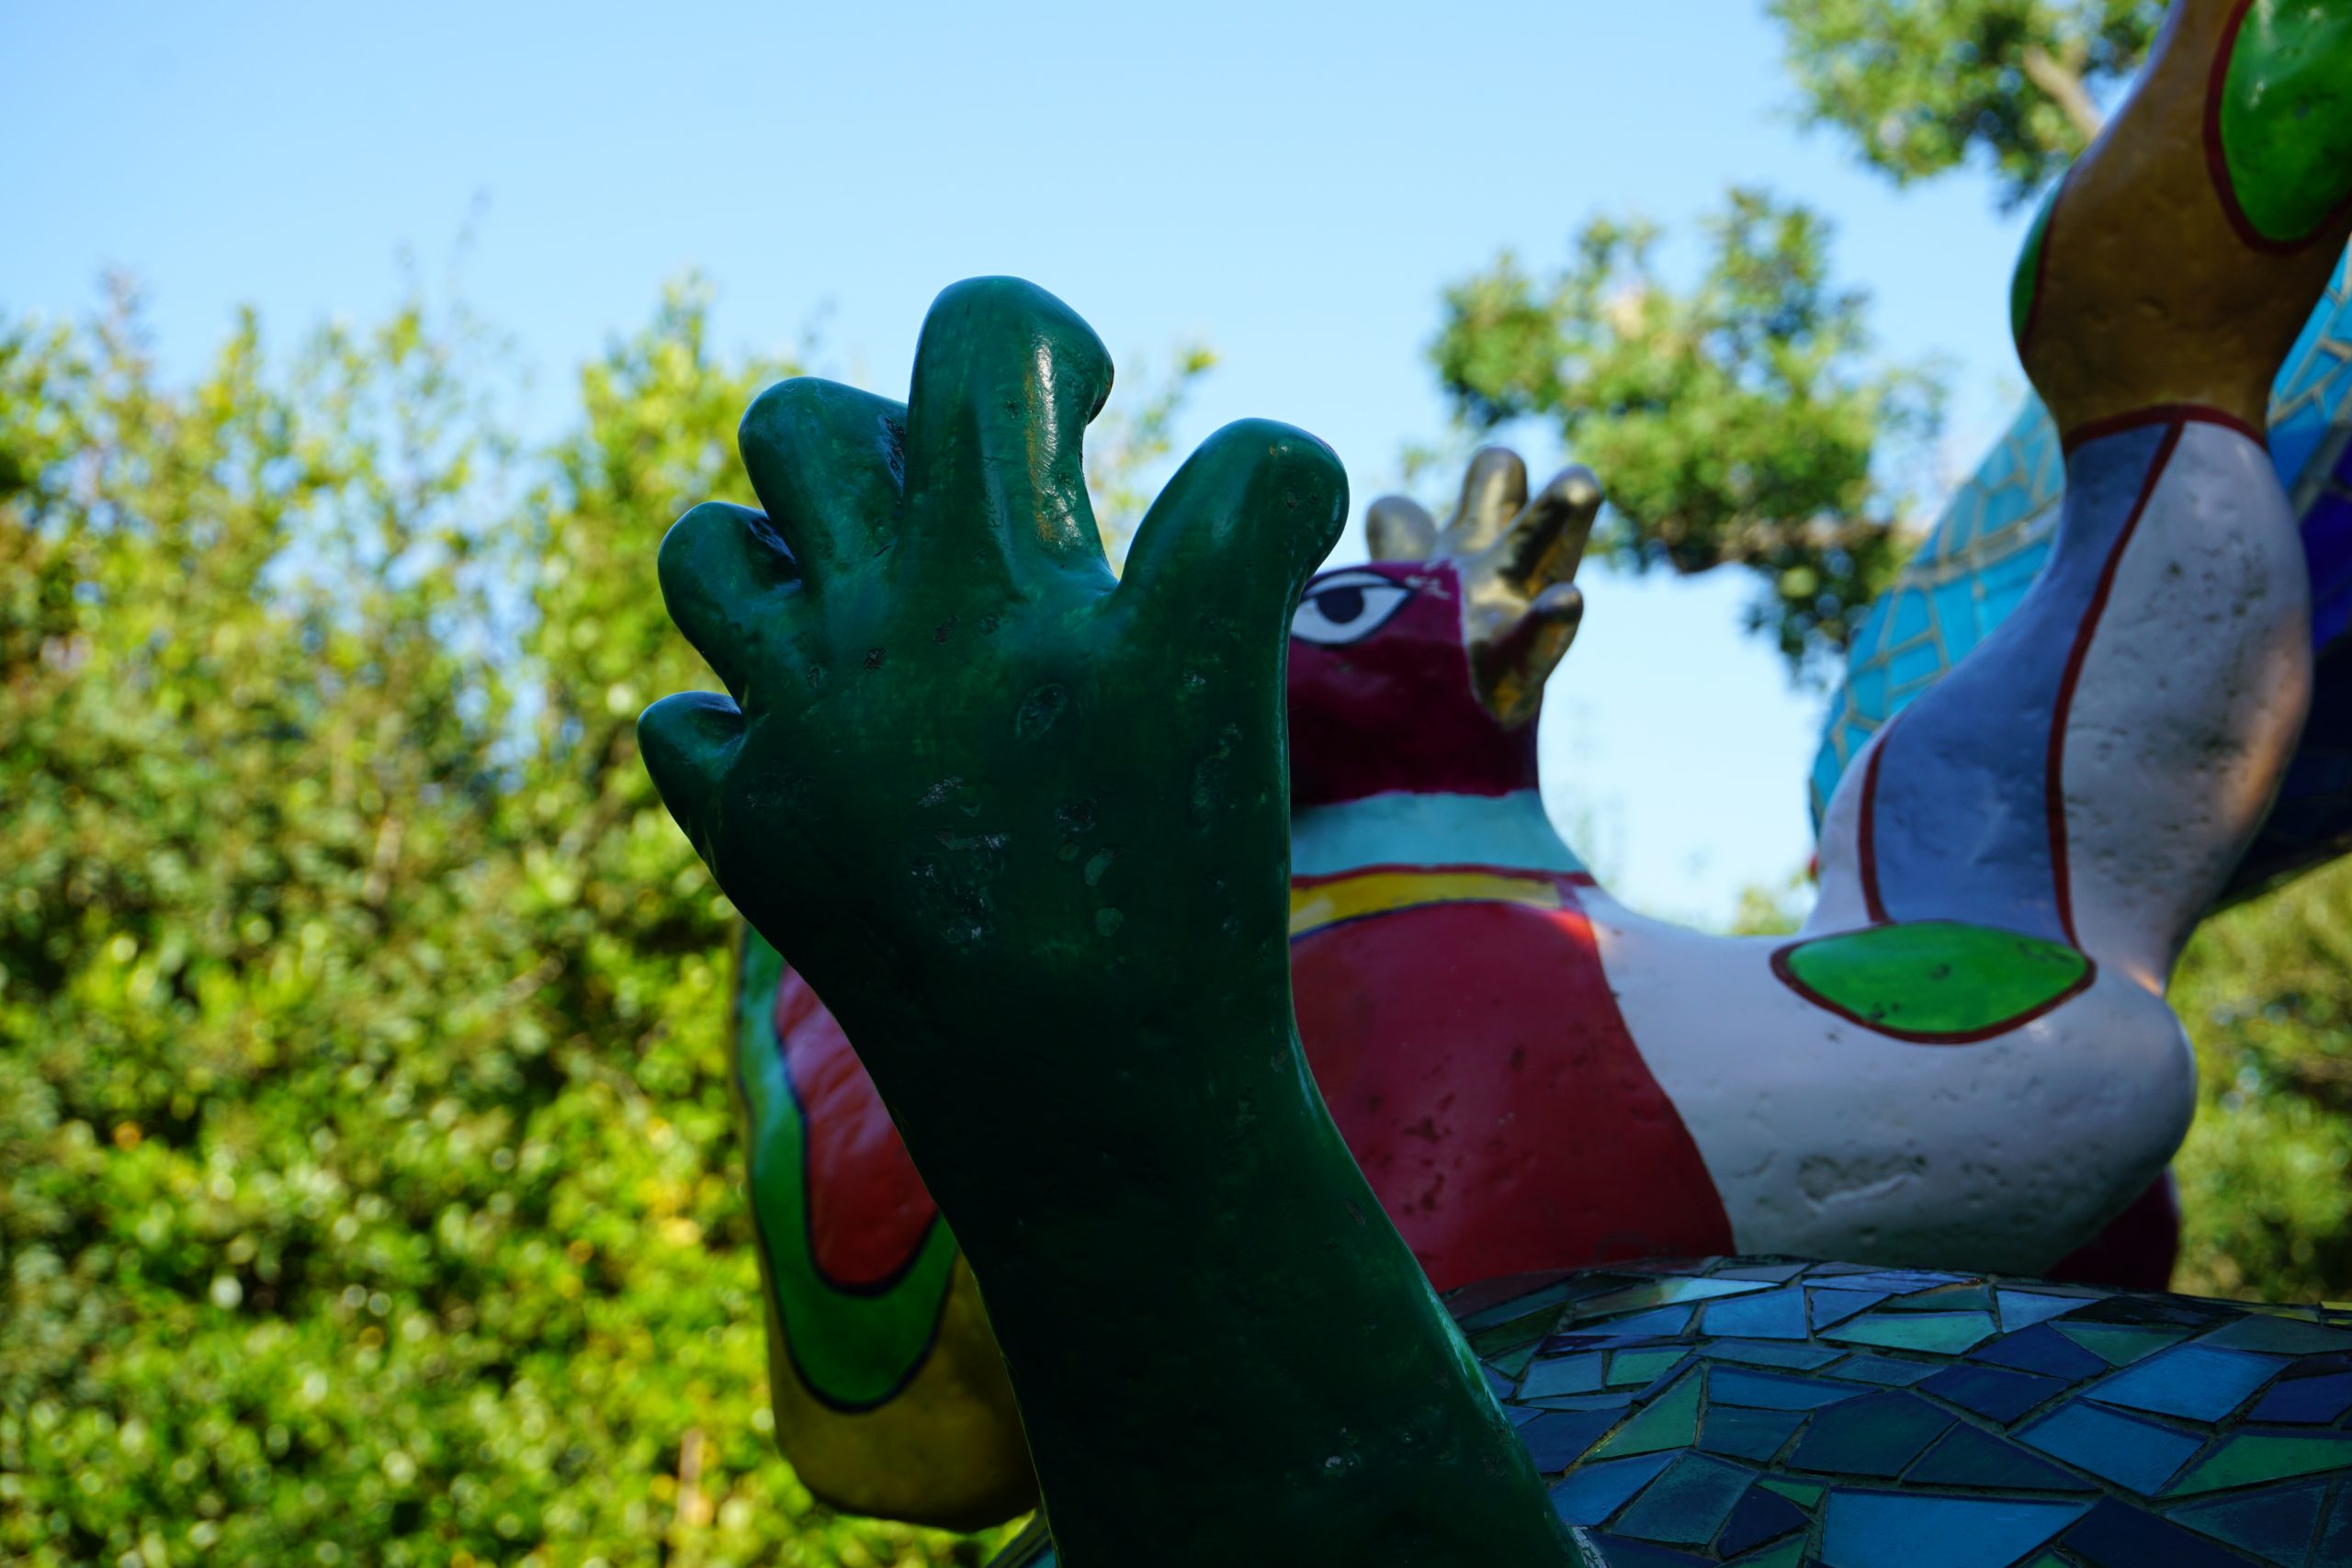 Une partie d'une des sculptures du jardin, vue en contre-plongée. Une main de couleur verte, les doigts légèrement repliés comme pour attraper quelque chose se dresse, plantée dans le socle. Derrière, on distingue des éléments colorés du reste de la statut et une haie au loin.